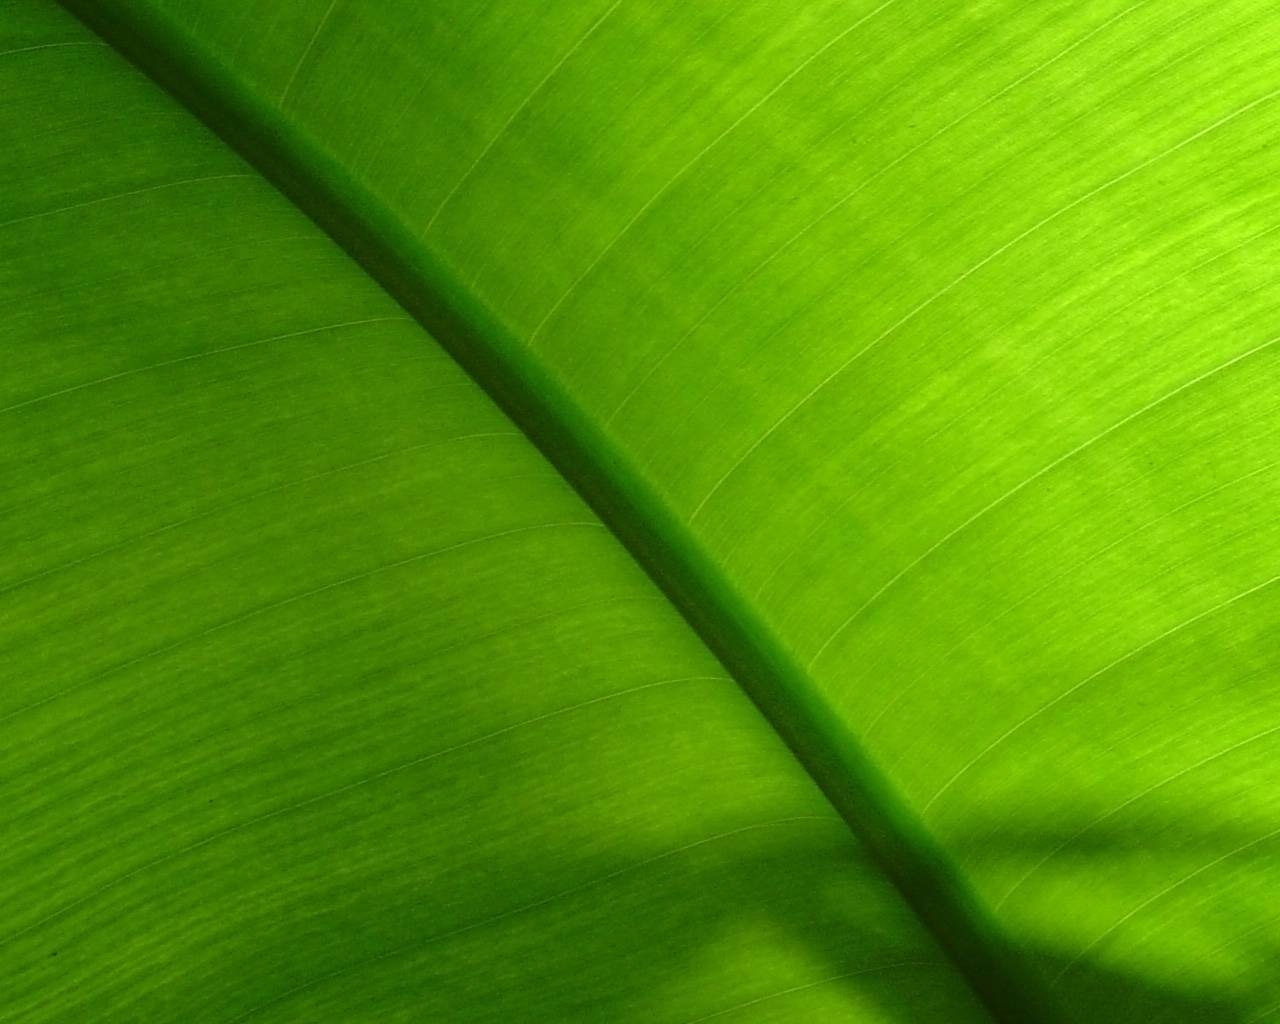 tapete hijau,grün,blatt,bananenblatt,nahansicht,linie